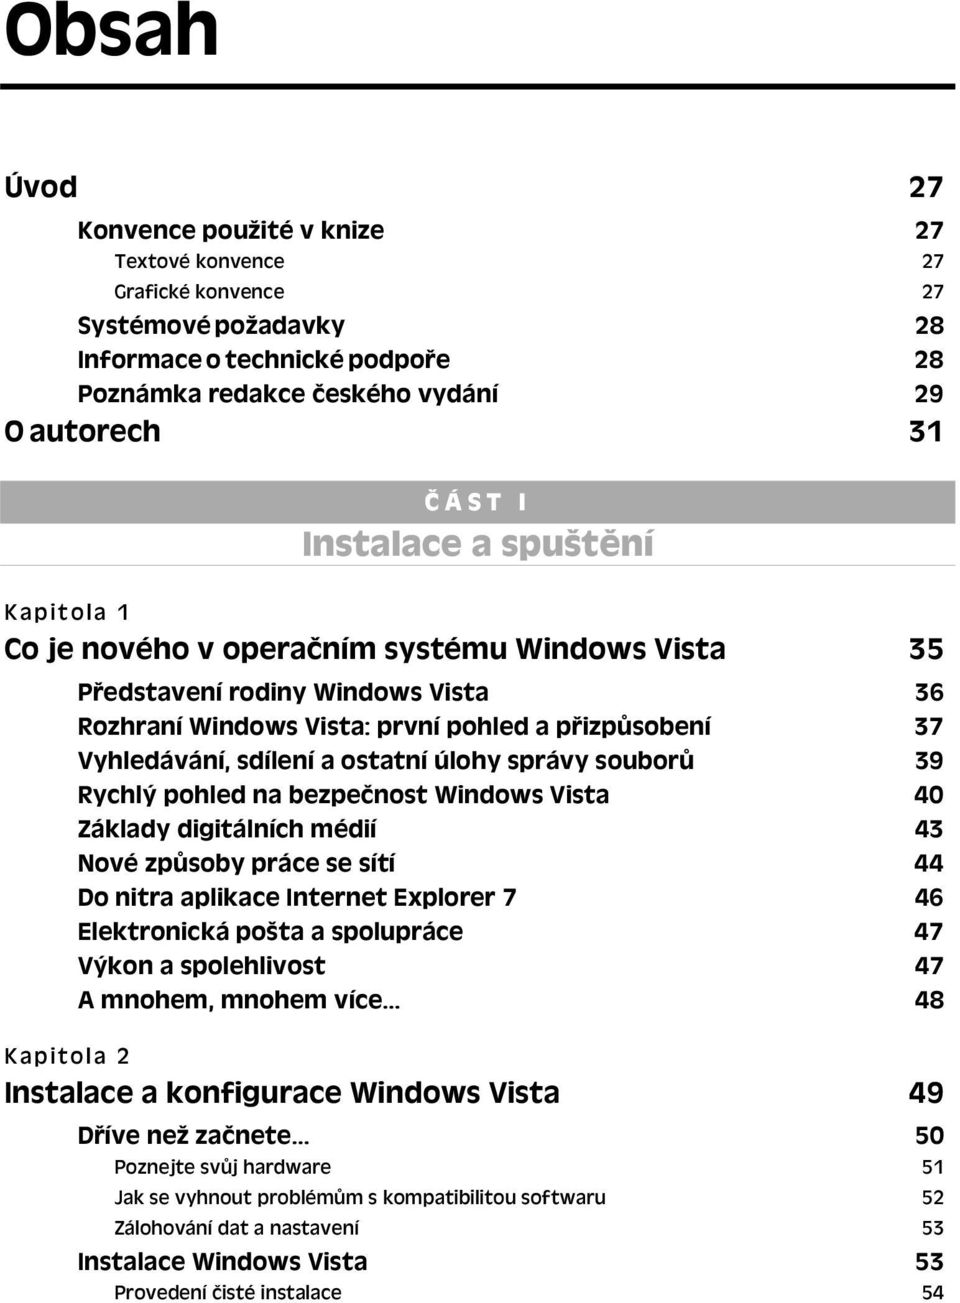 ostatní úlohy správy souborů 39 Rychlý pohled na bezpečnost Windows Vista 40 Základy digitálních médií 43 Nové způsoby práce se sítí 44 Do nitra aplikace Internet Explorer 7 46 Elektronická pošta a